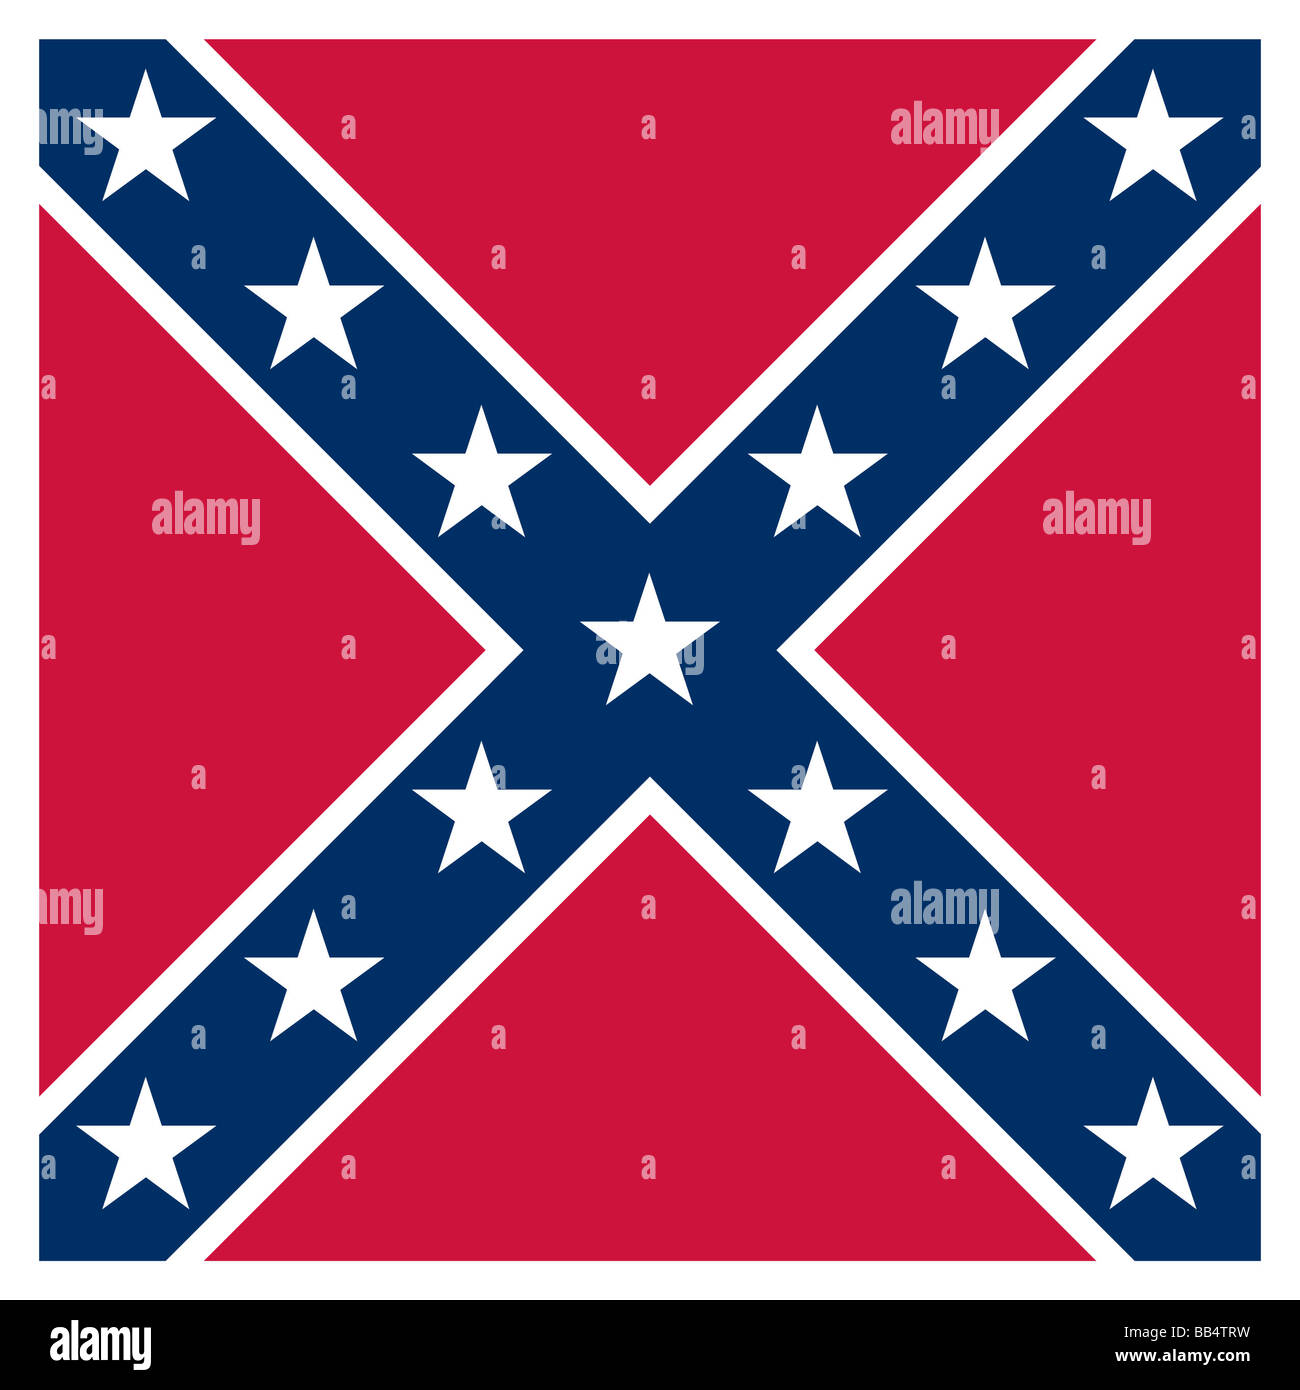 Drapeau historique des États-Unis d'Amérique. Les soldats confédérés ont amené ce drapeau de combat pendant la guerre civile. C'est neve Banque D'Images